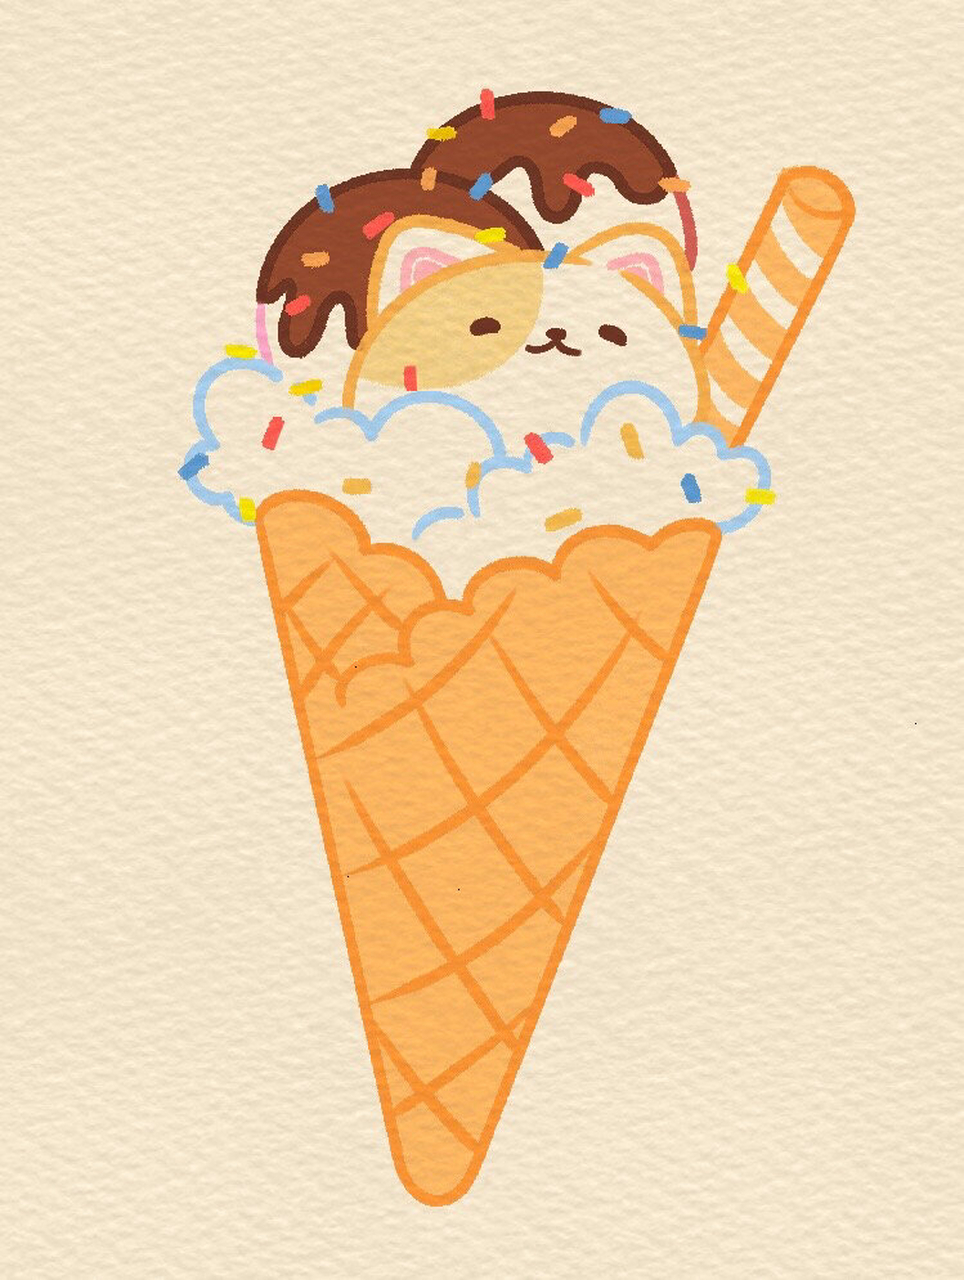 巧克力冰淇淋的简笔画图片